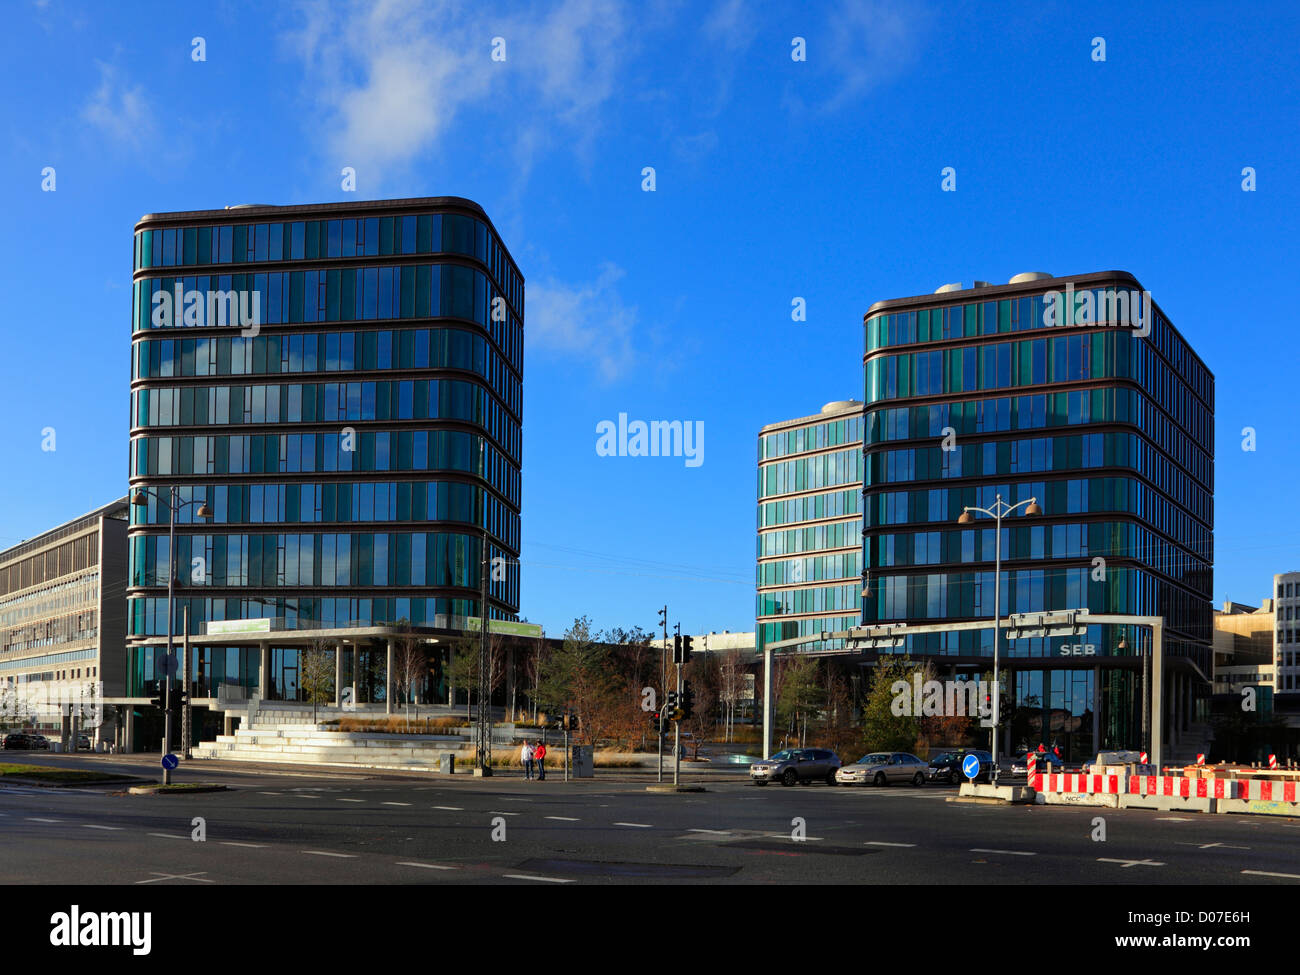 El SEB Bank edificio cerca de la parte frontal del puerto de Copenhague. Utilizado como ubicación del rodaje en la serie de suspense danés la matanza 3 Foto de stock